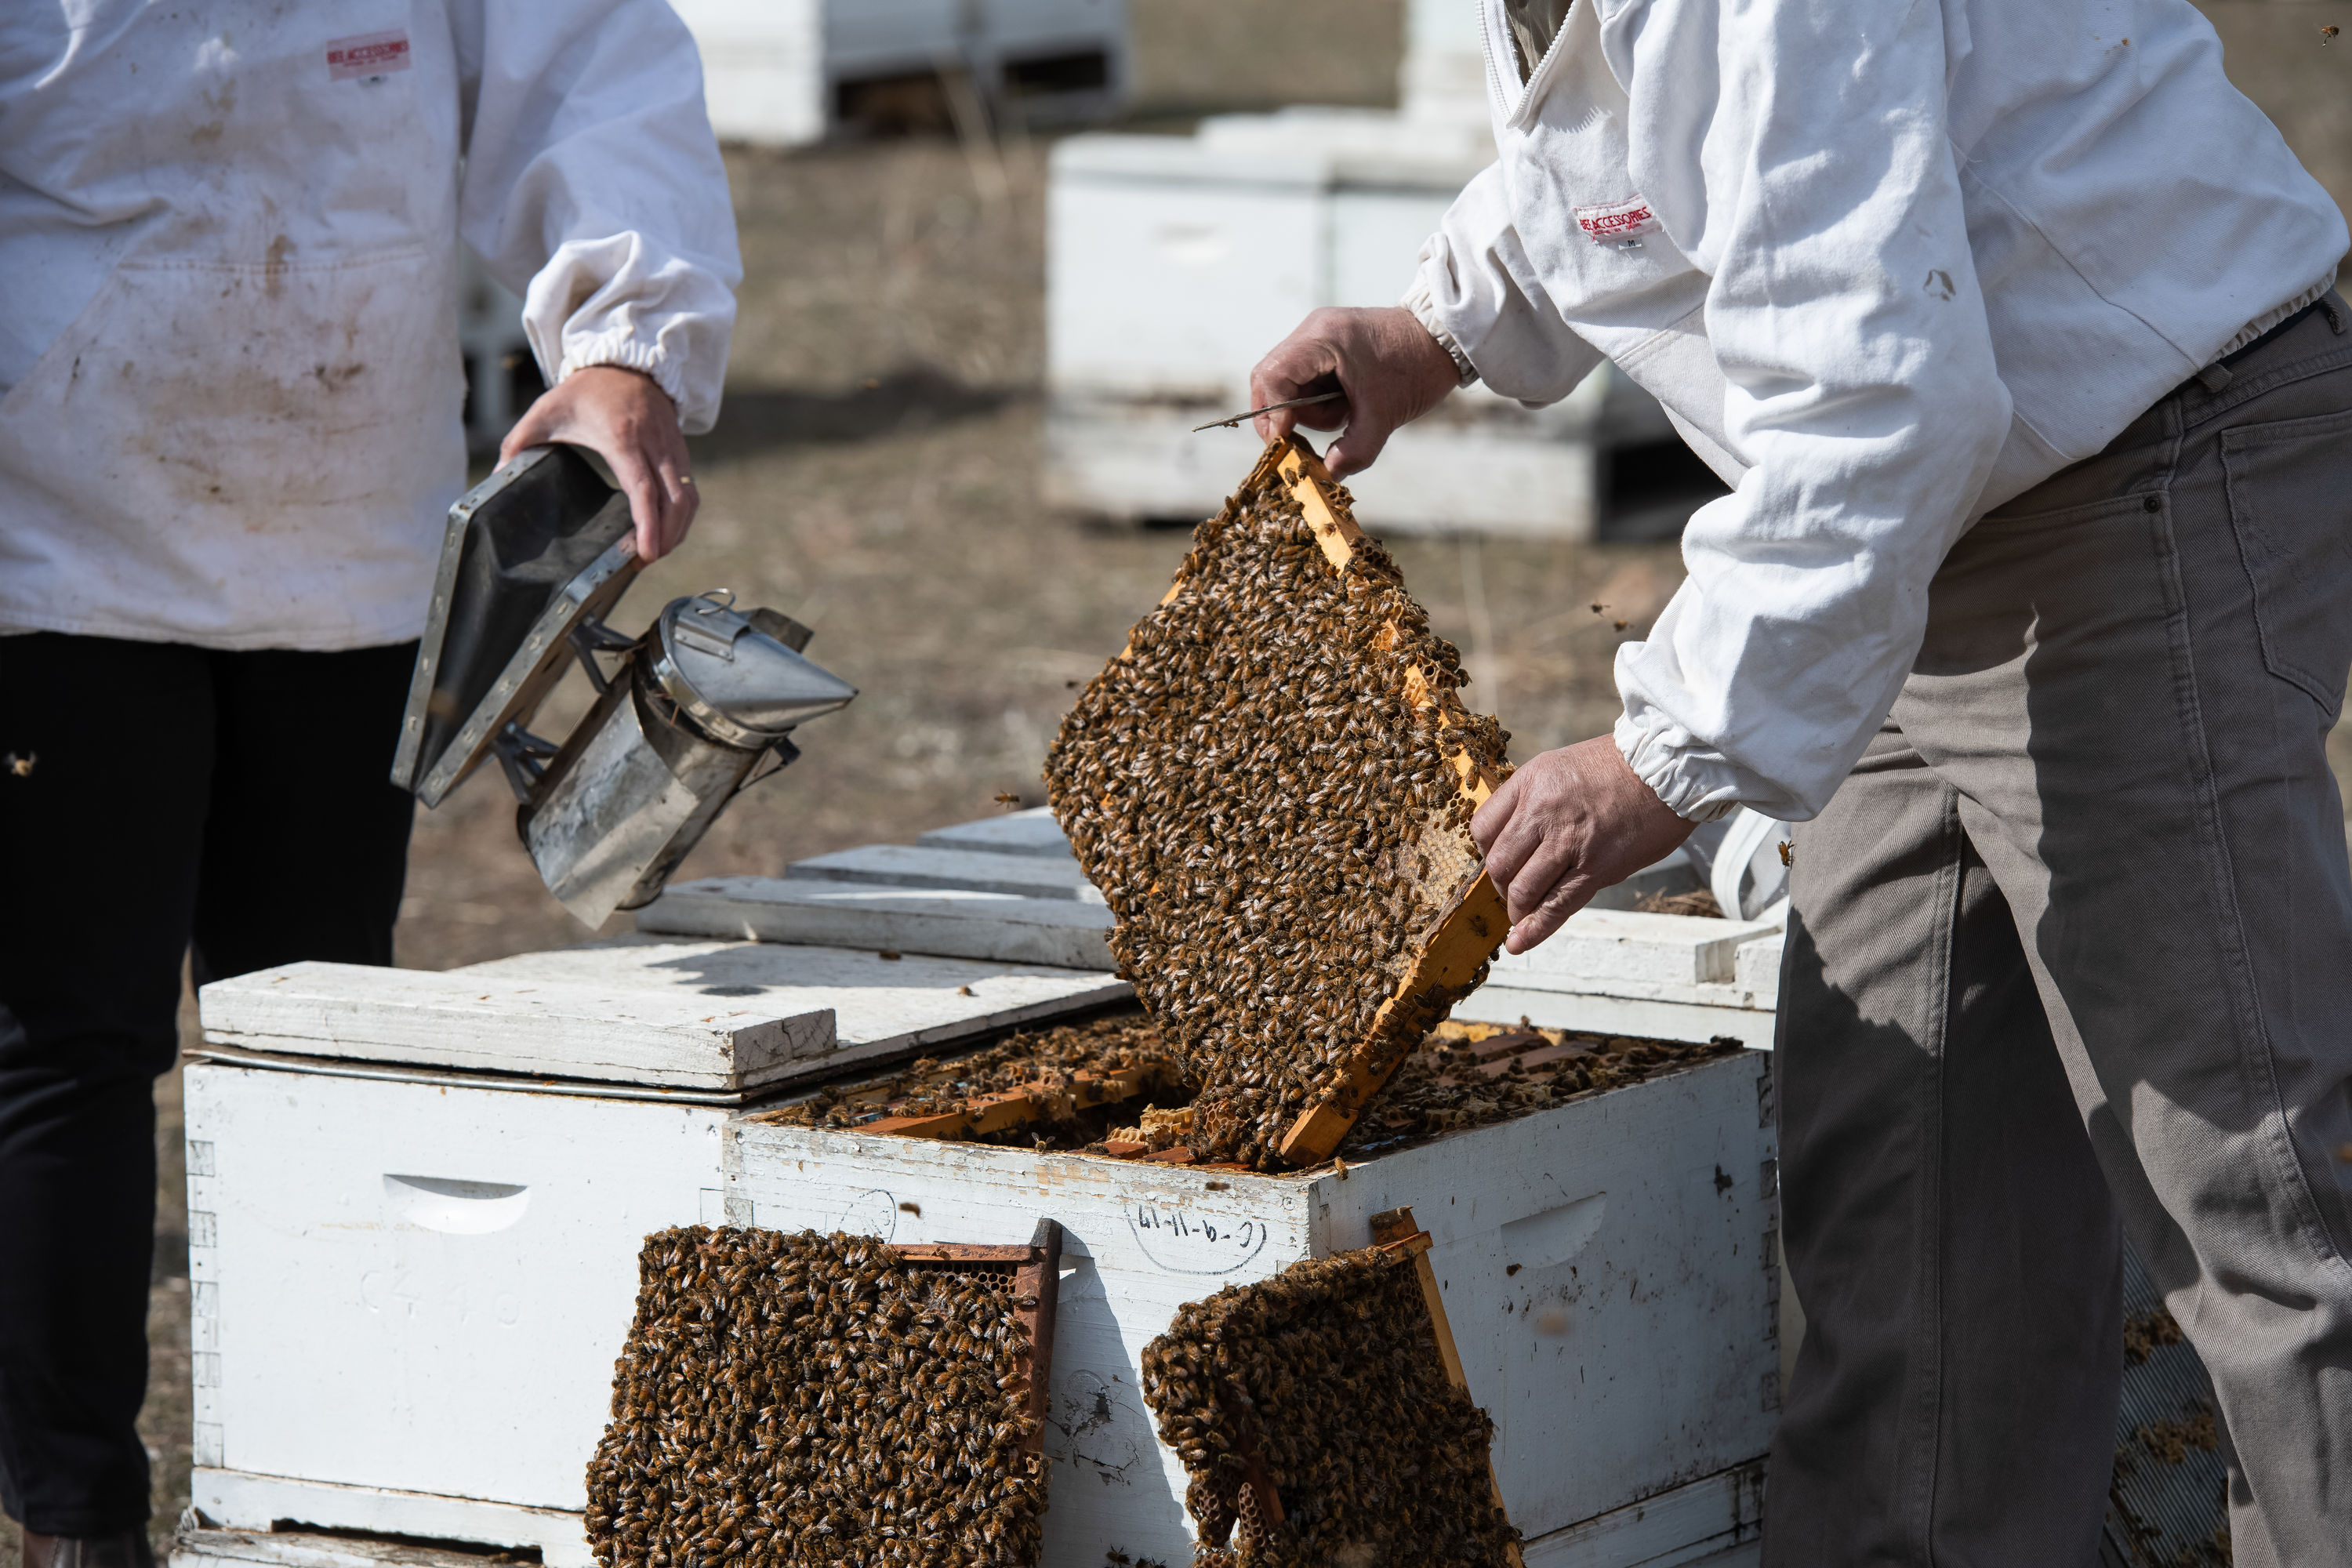 Honey bees in lockdown